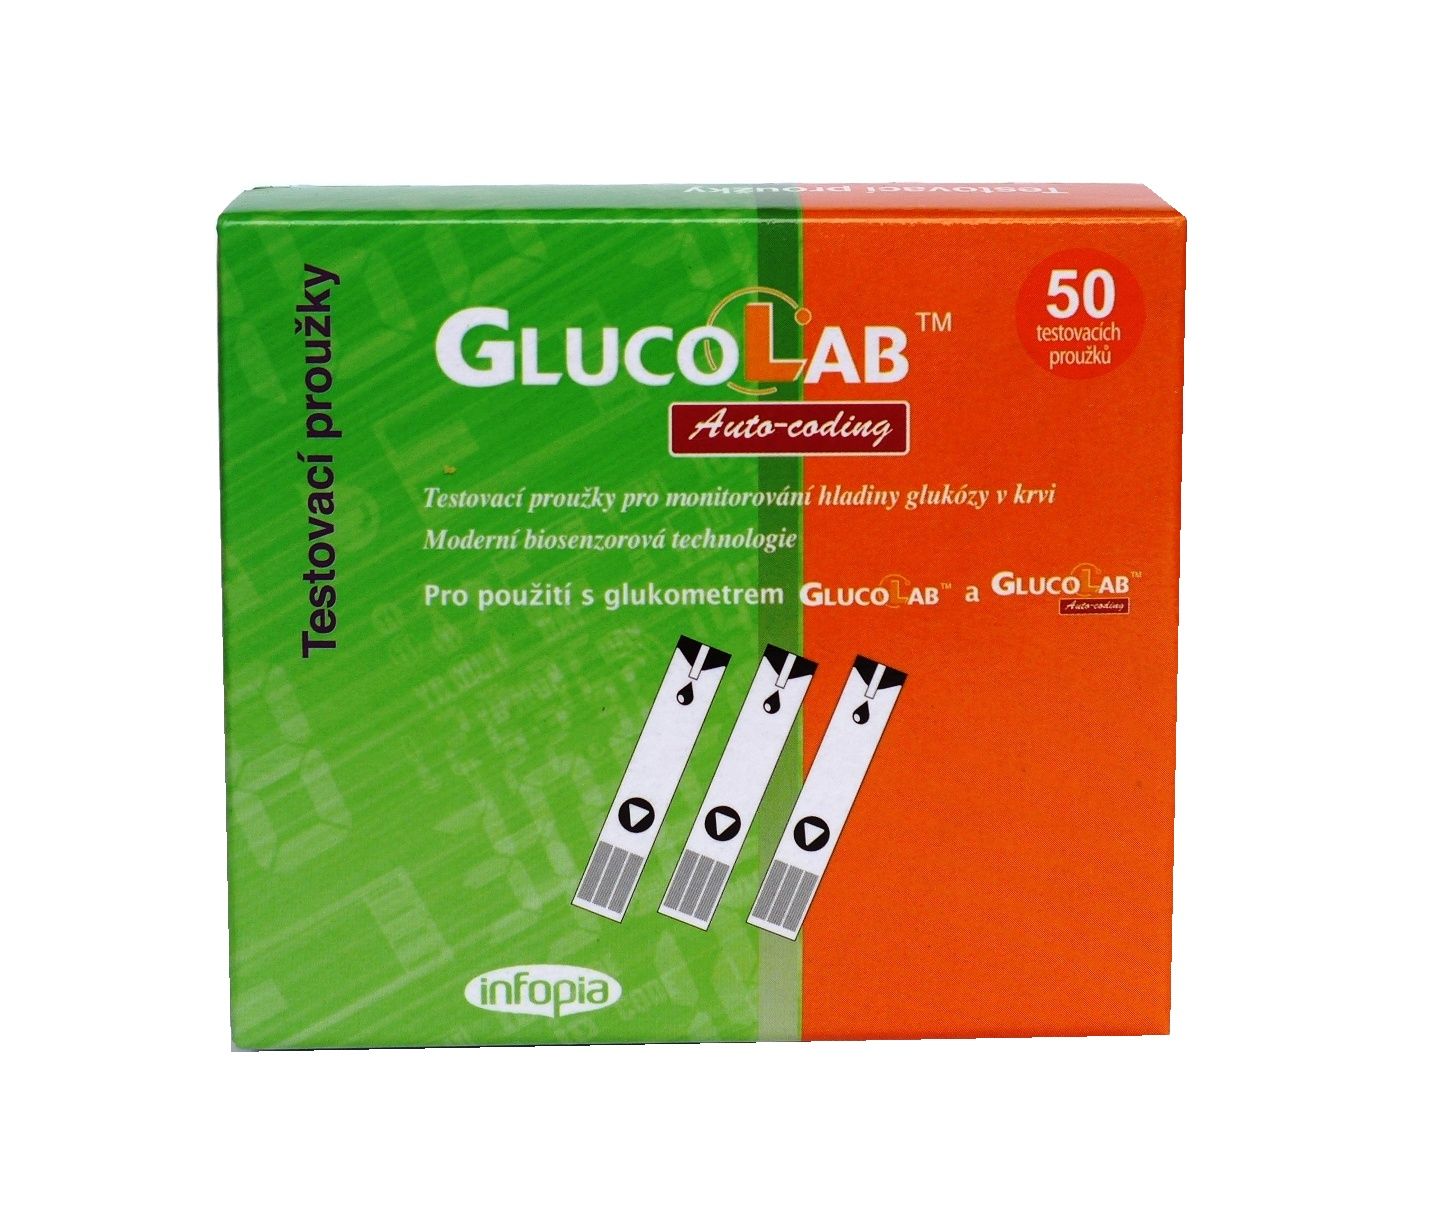 Glucolab Testovací proužky pro glukometr GlucoLab 50 ks Glucolab